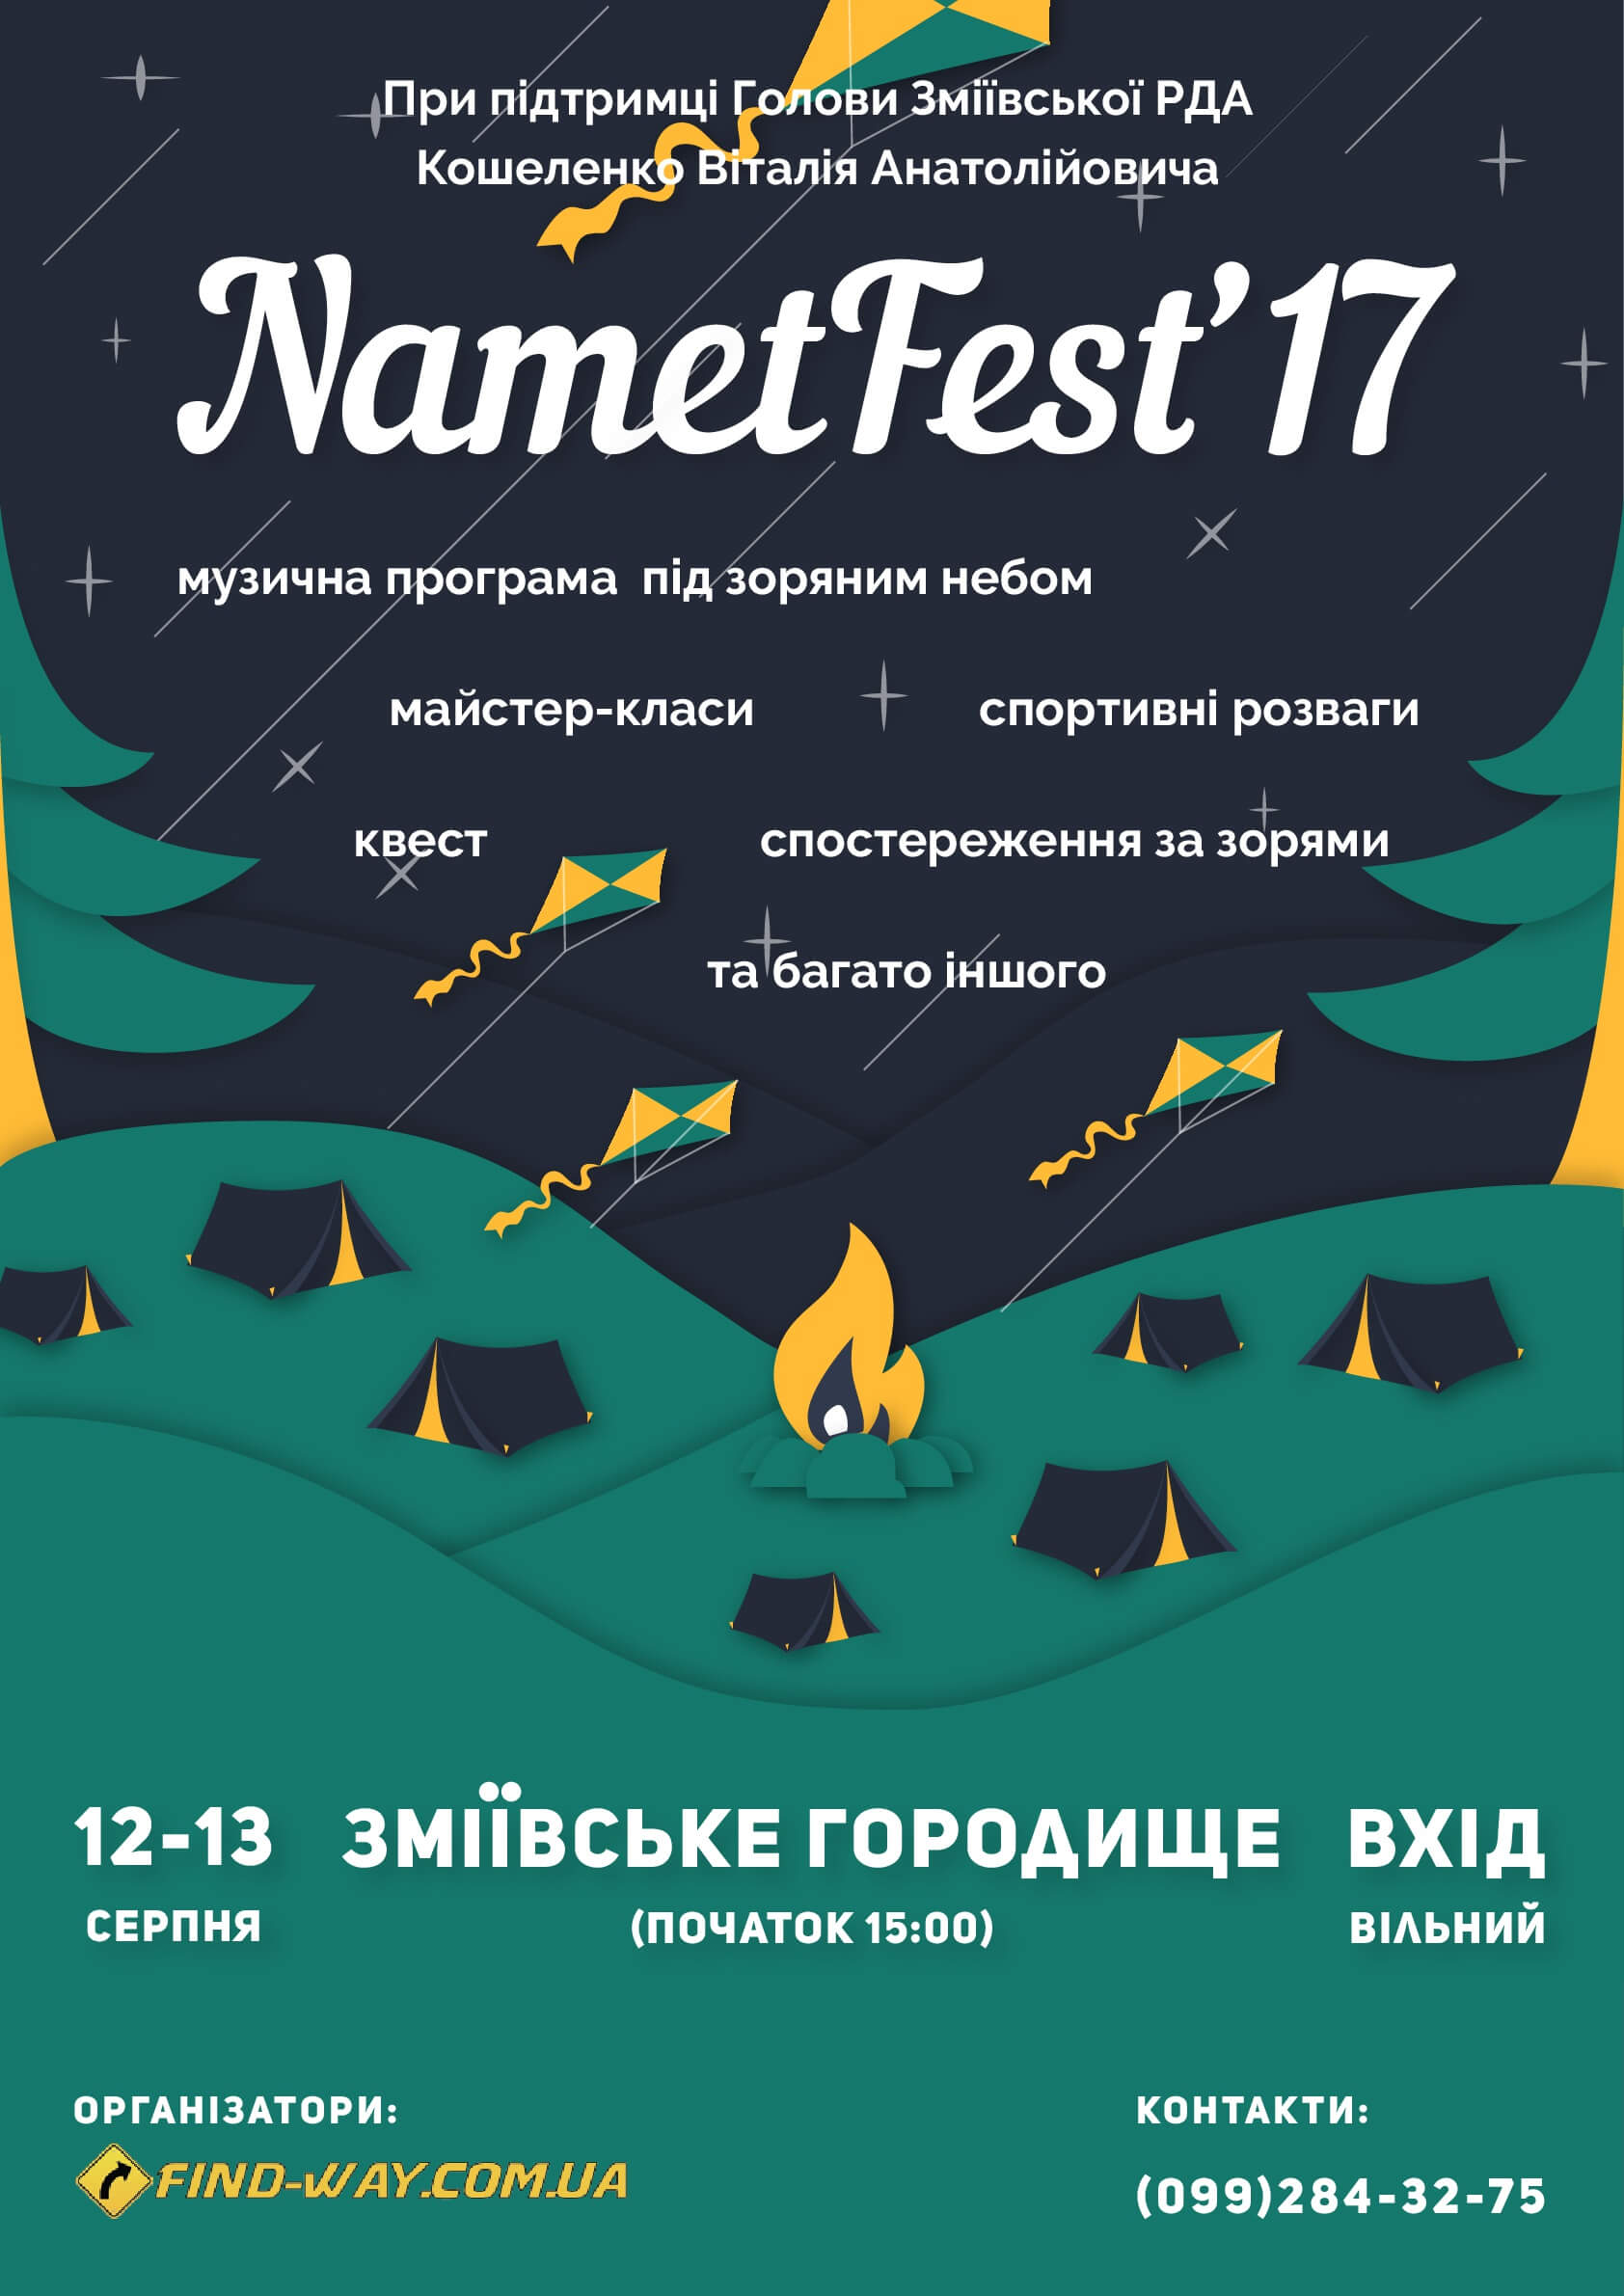 NametFest2017 Poster last